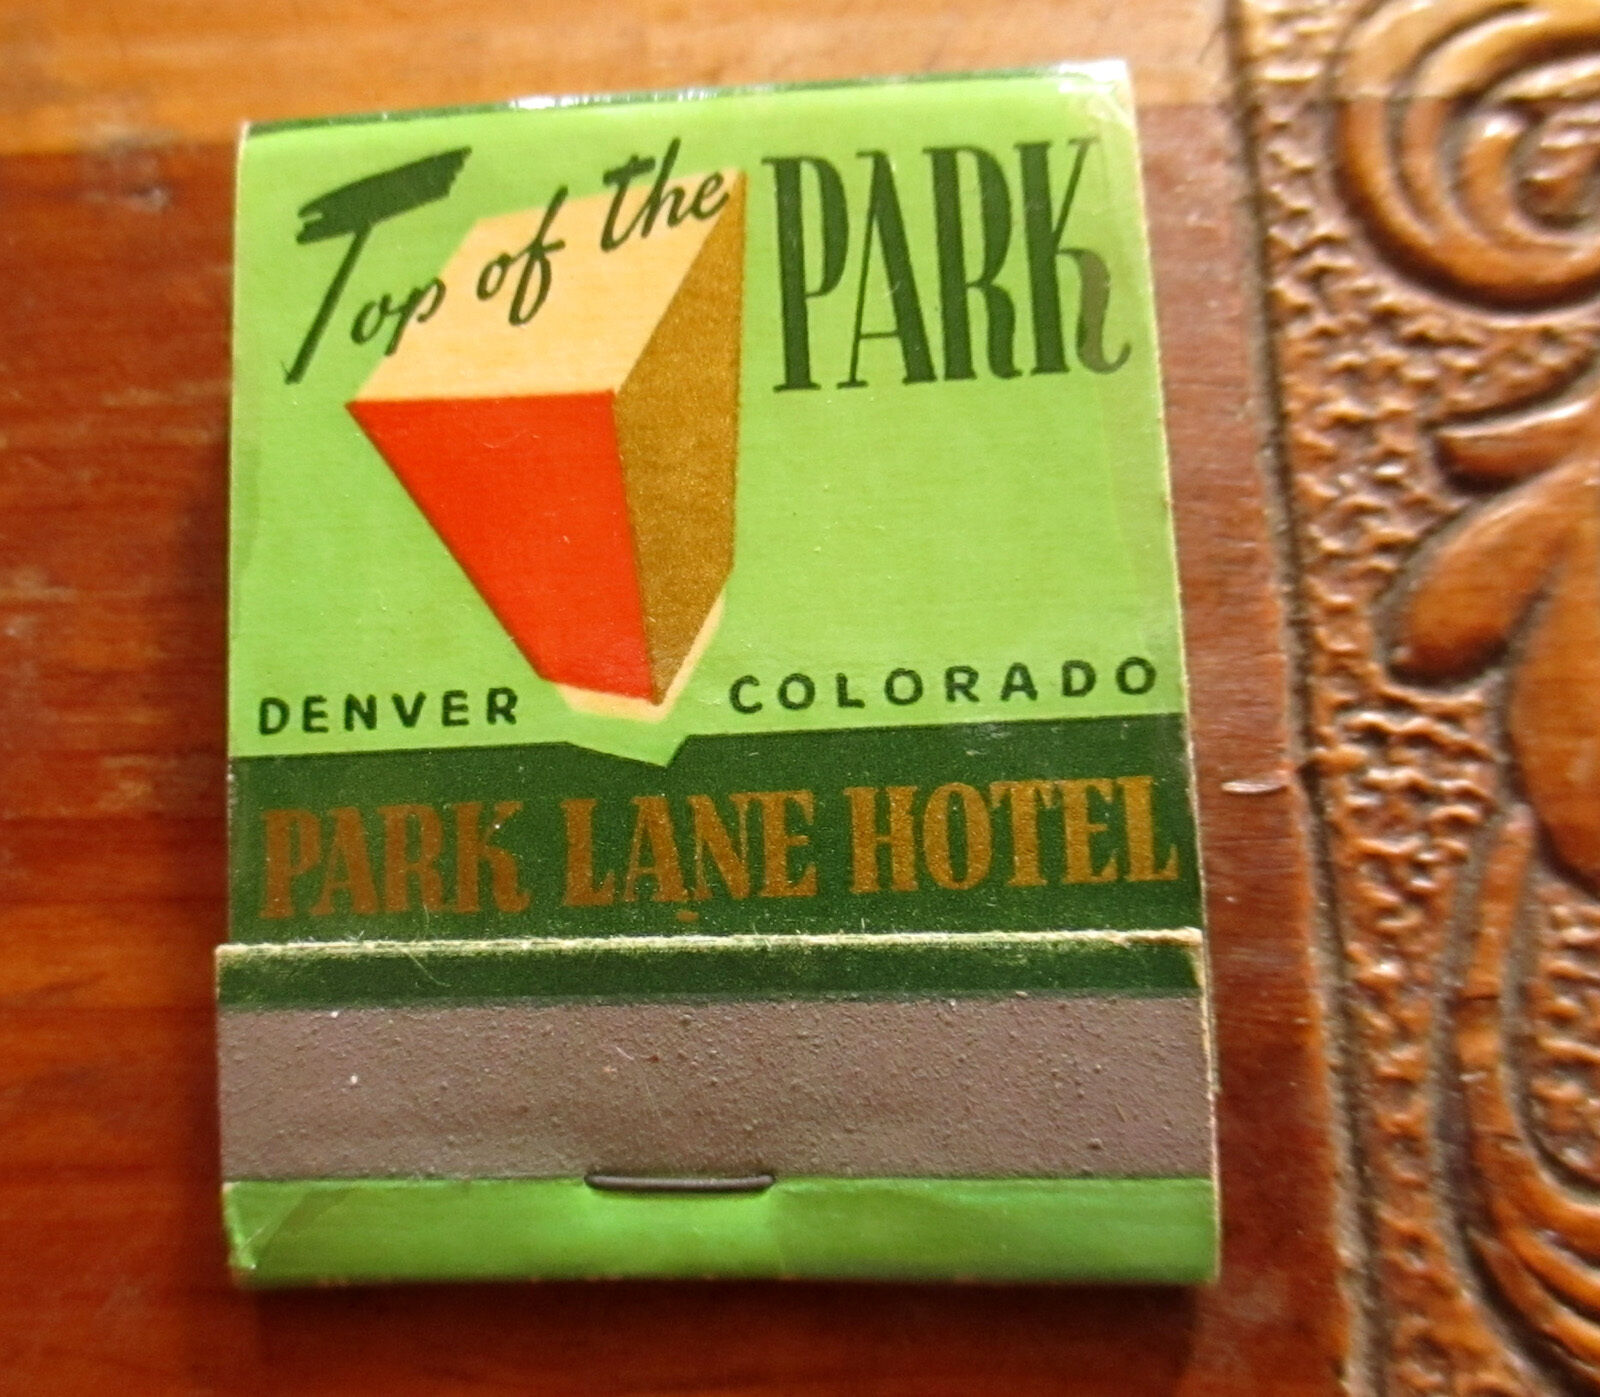 NEW UNSTRUCK VTG Matchbook Cover - PARK LANE Hotel Denver Colorado 